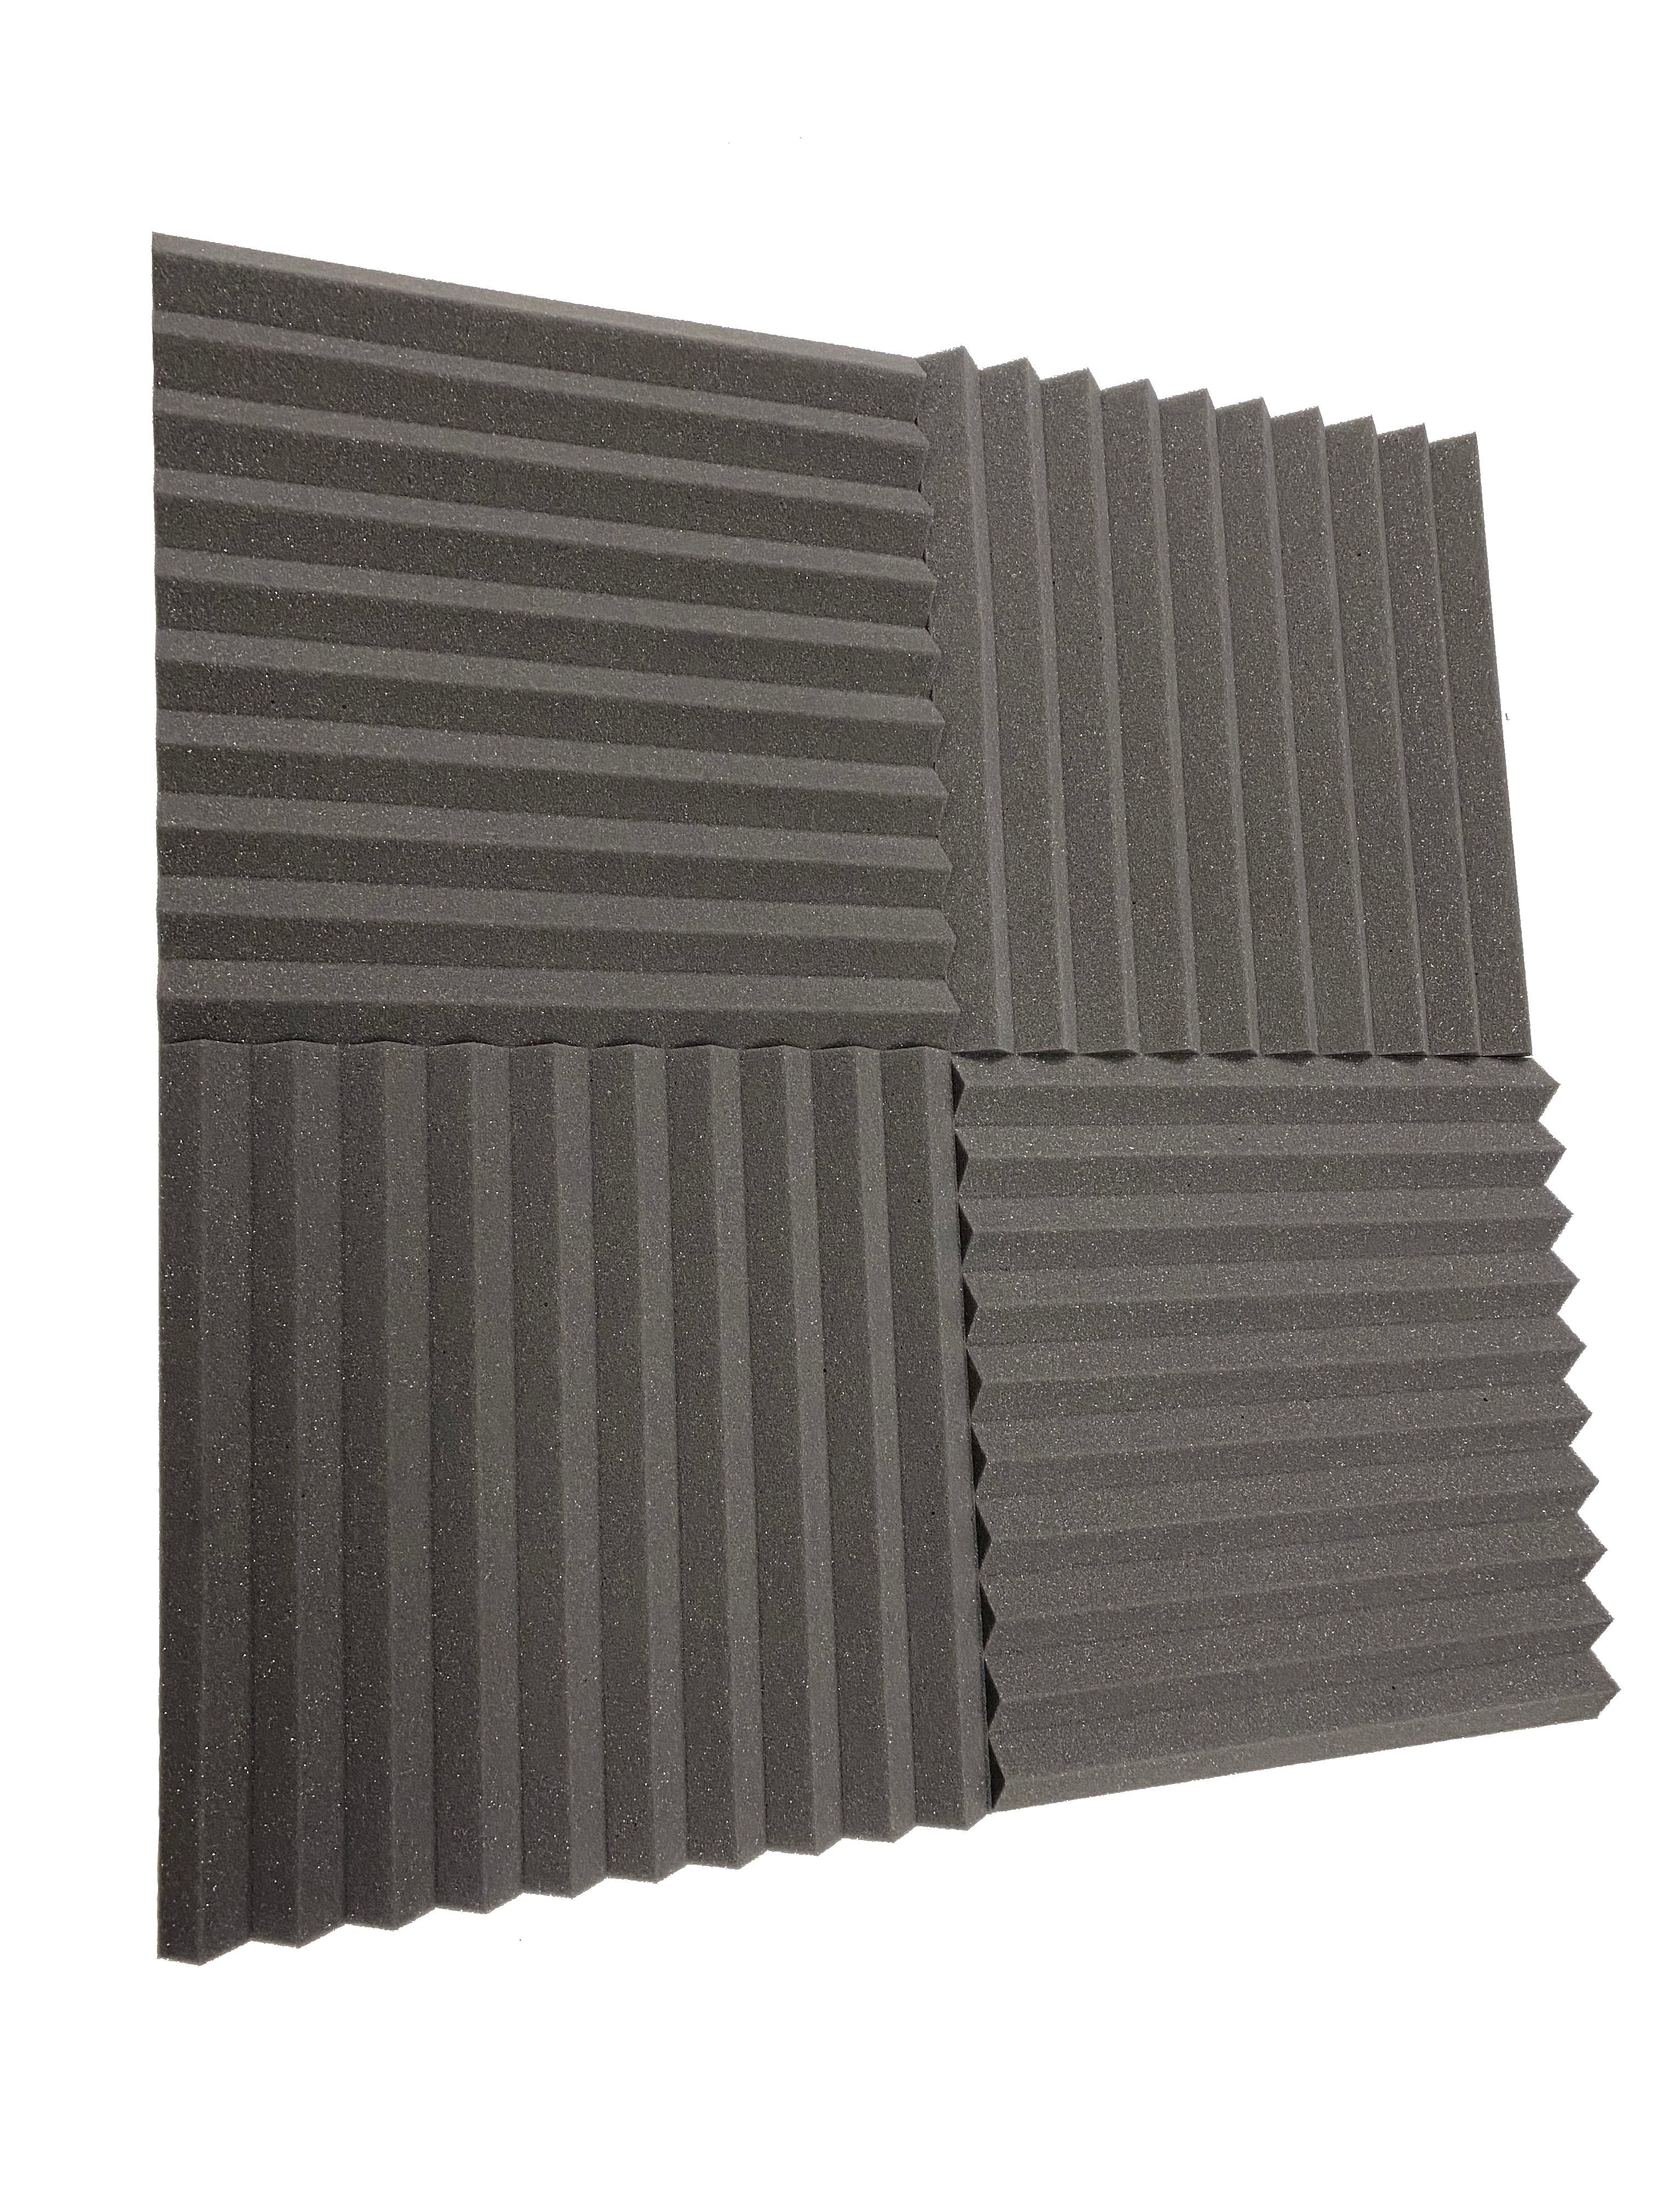 Wedge 15" Acoustic Studio Foam Tile Pack